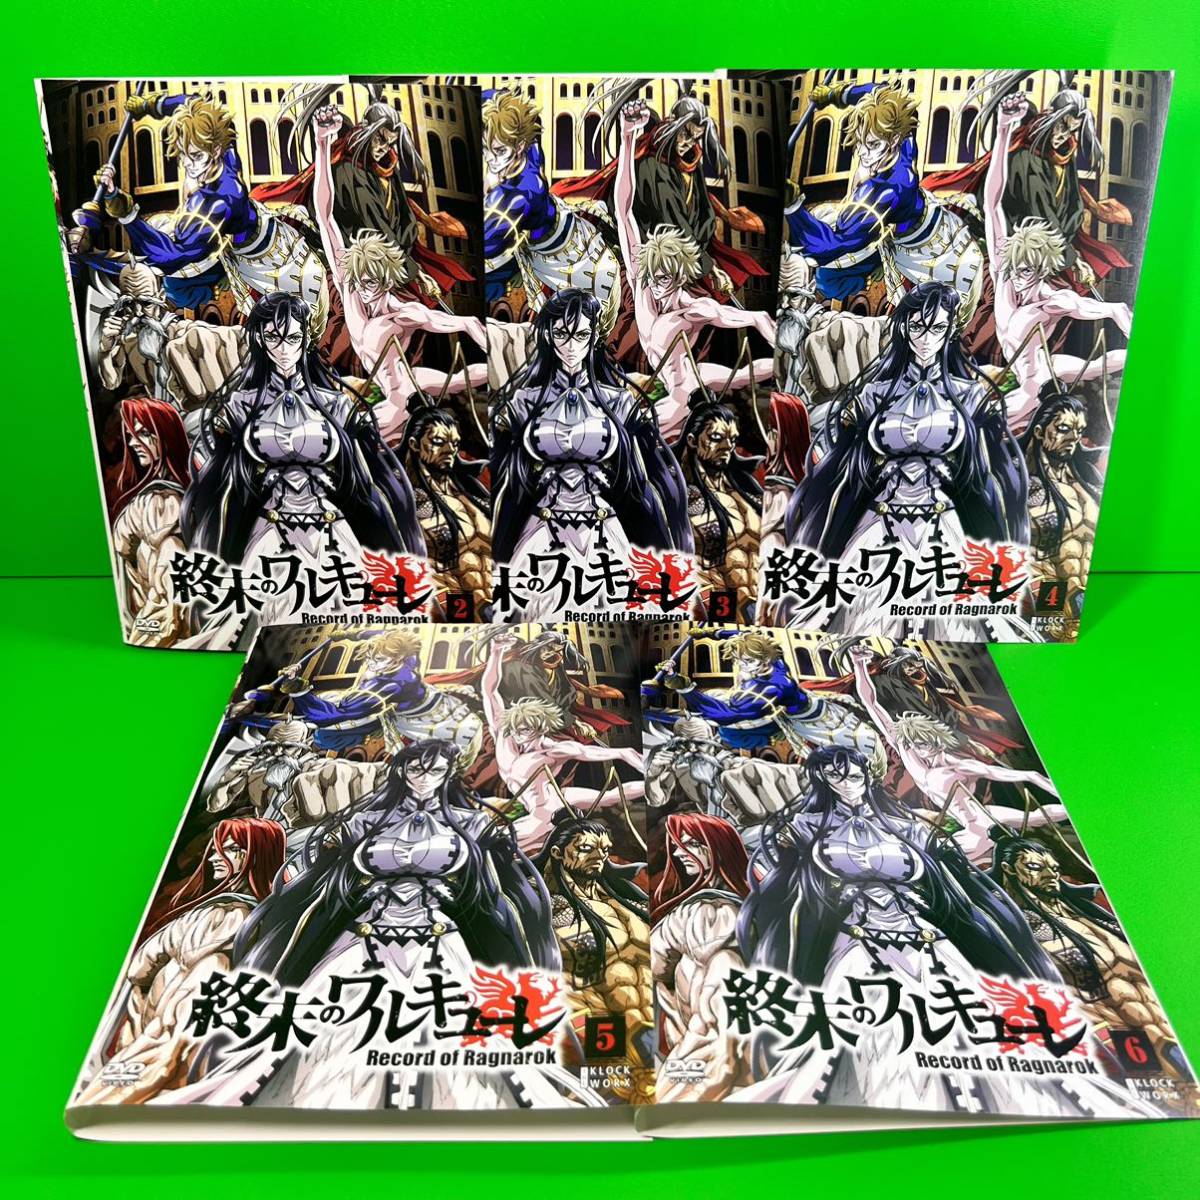 ケース付 終末のワルキューレ 1期DVD 全6巻 全巻セット